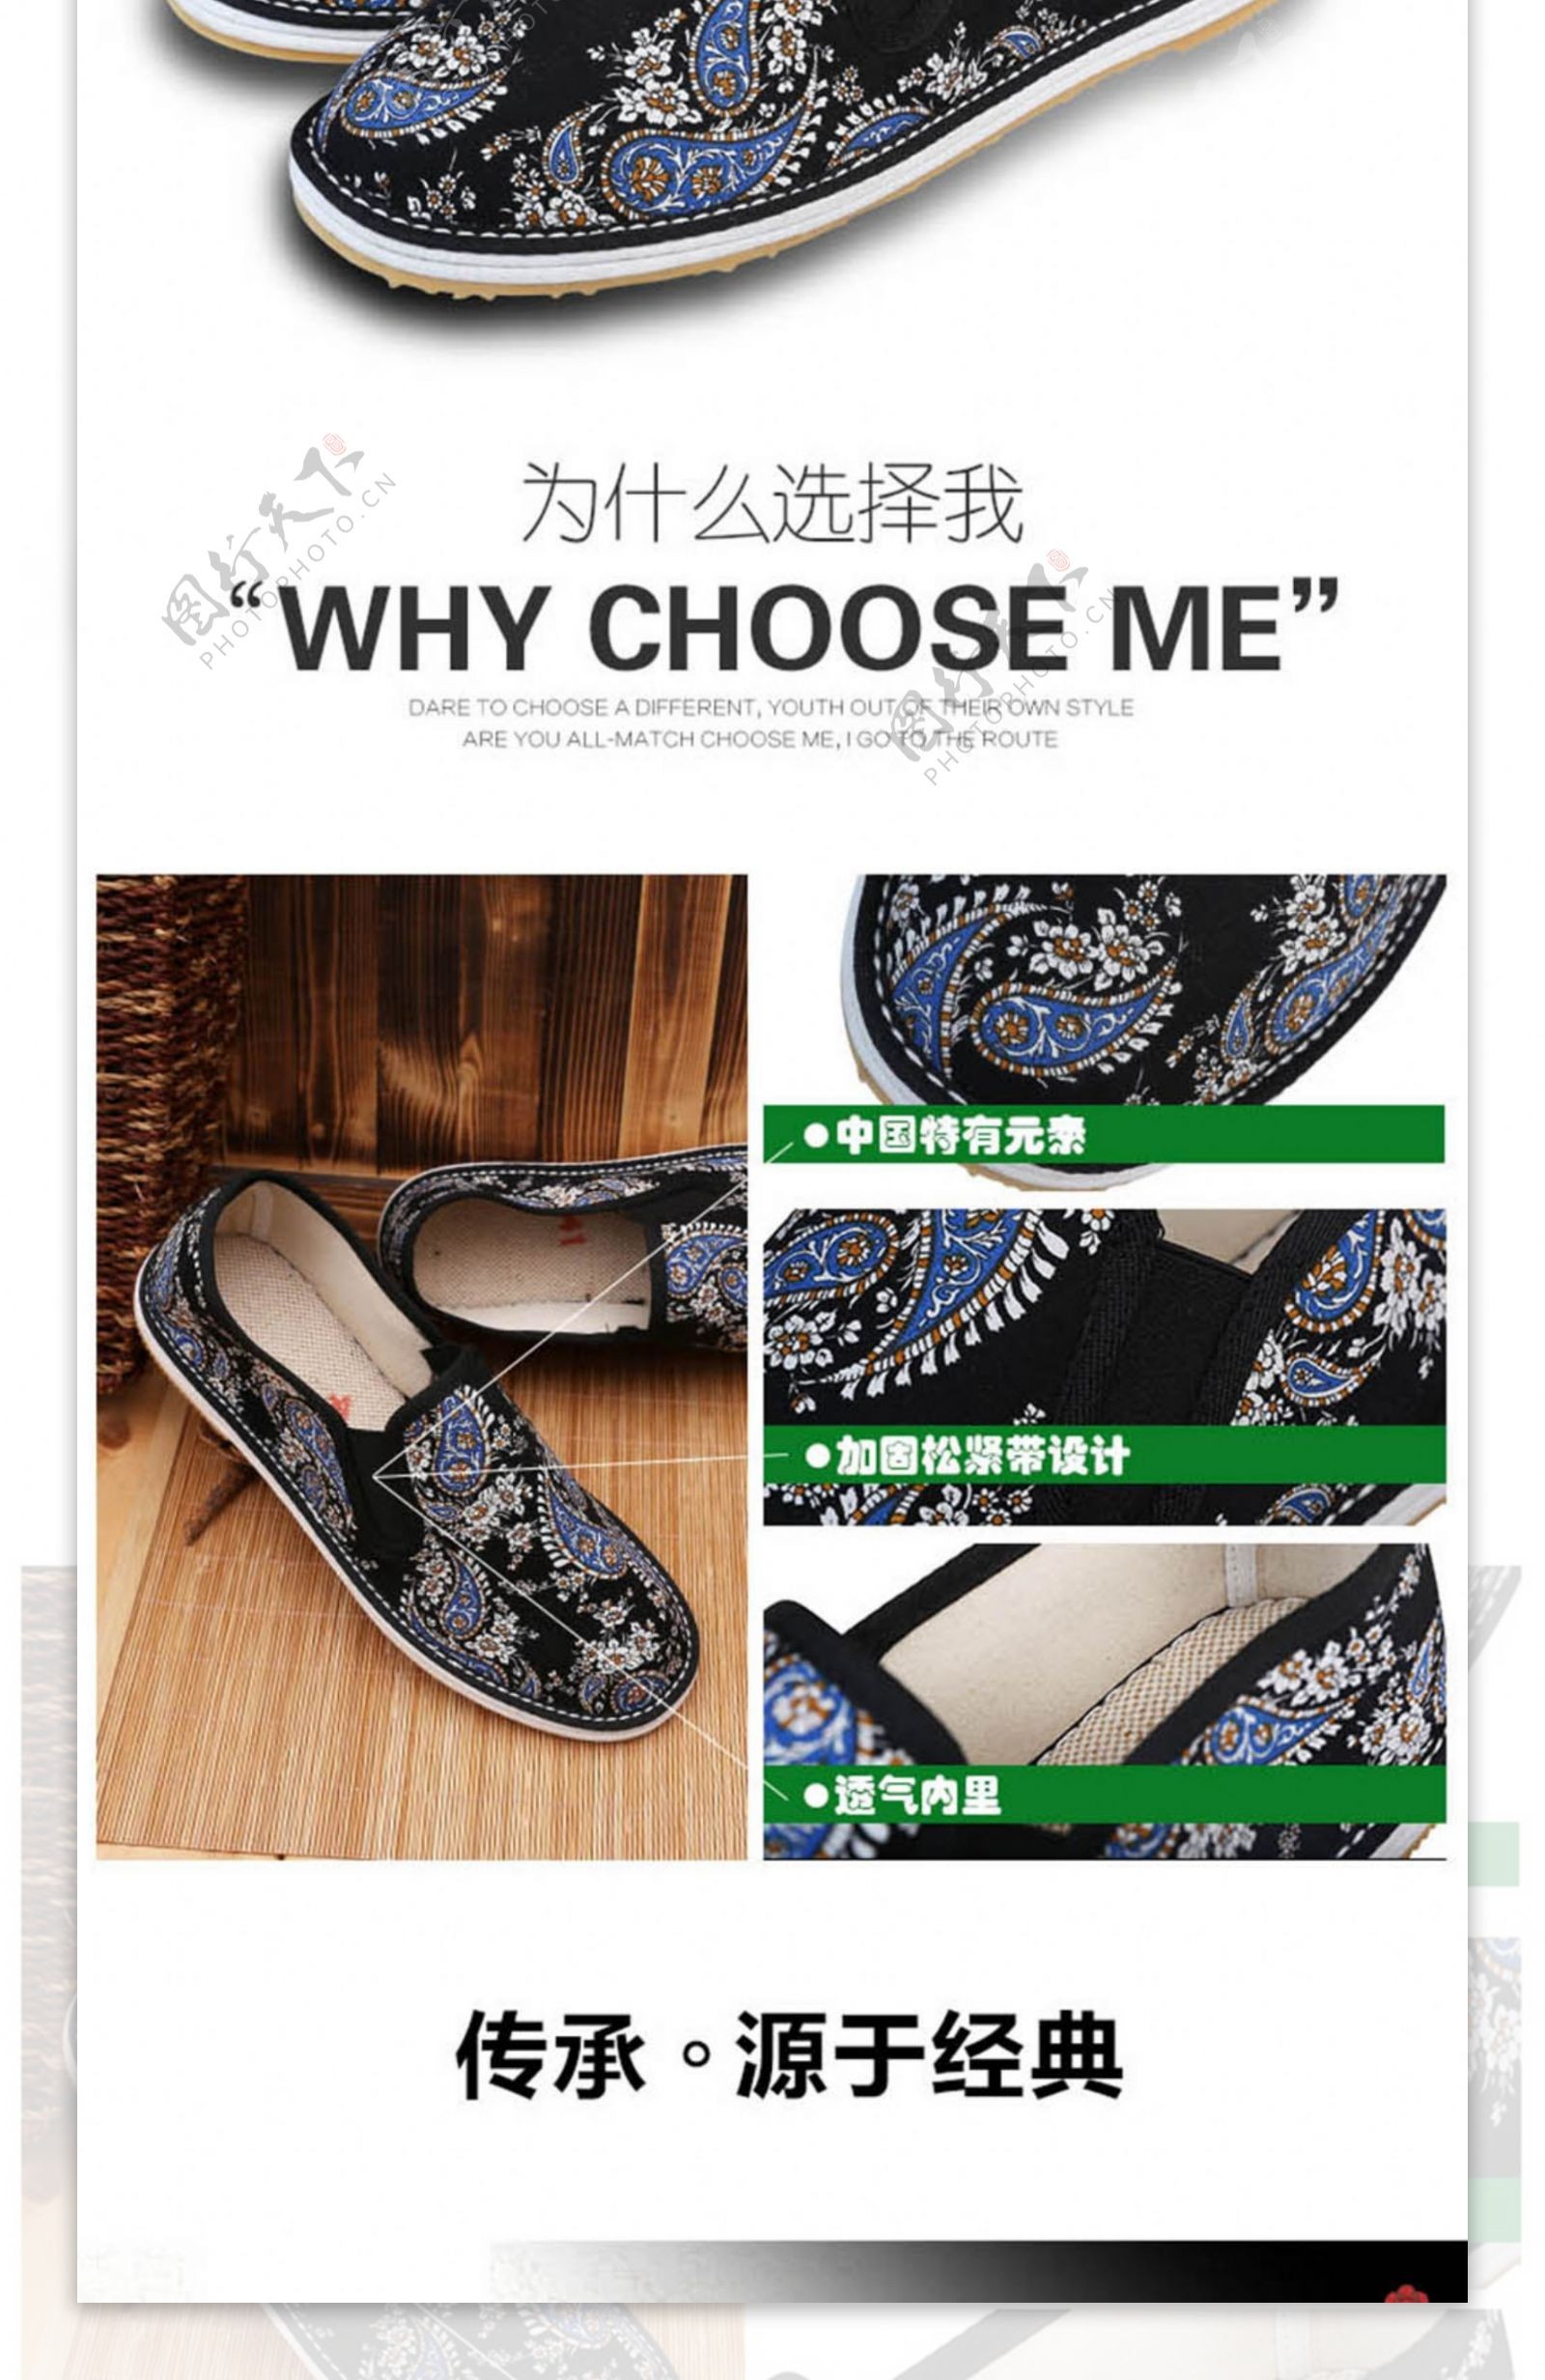 中国特色复古鞋子淘宝详情页